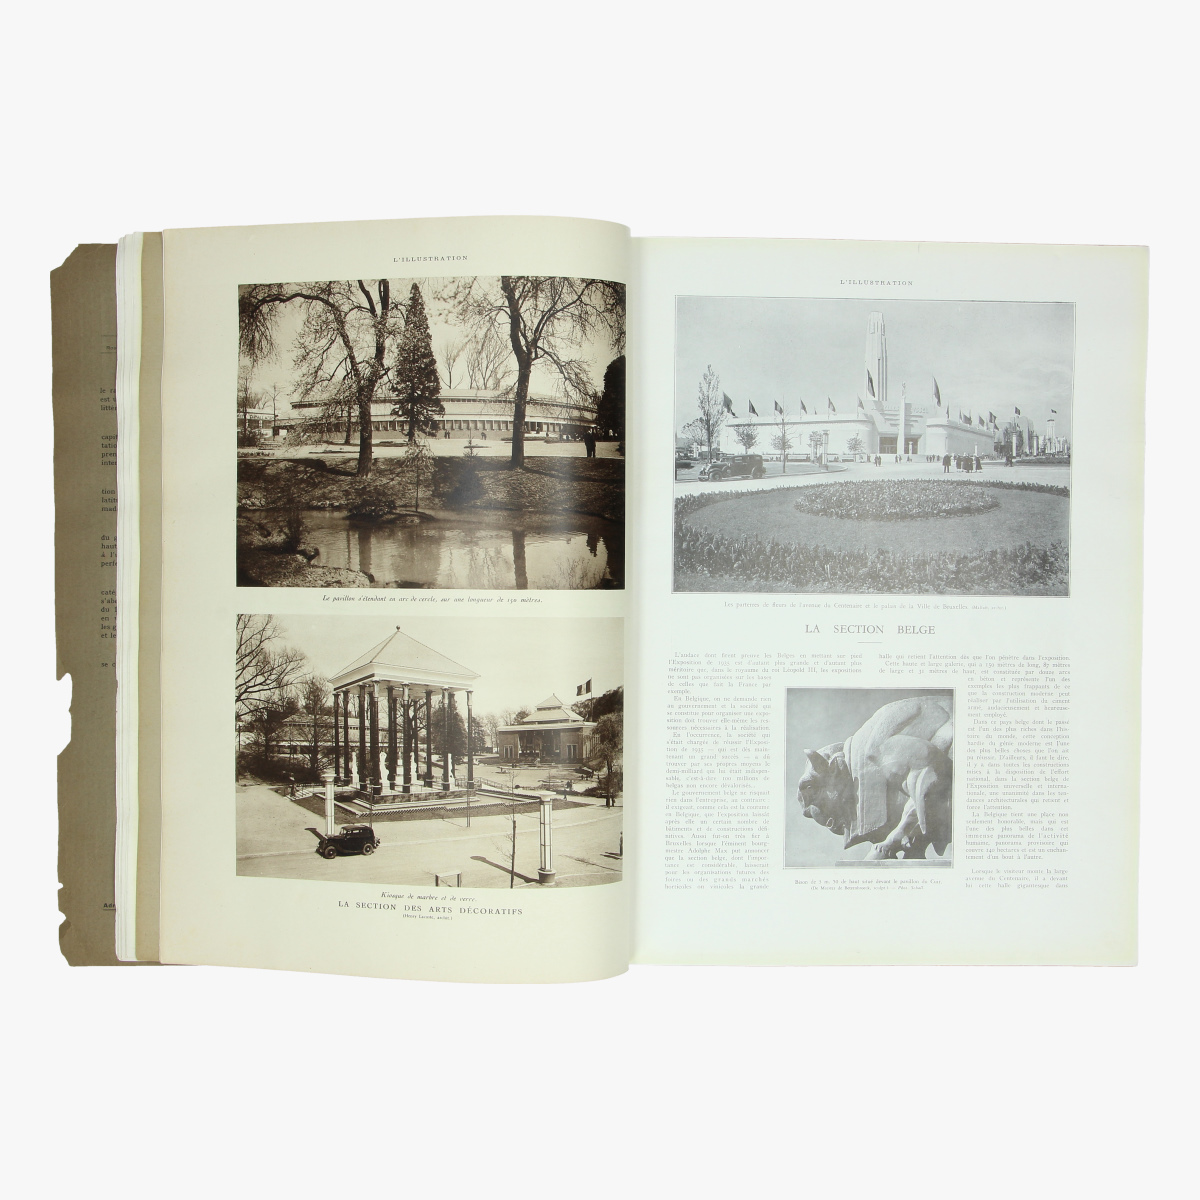 Afbeeldingen van exposition internationale de bxl 1935 album hors série